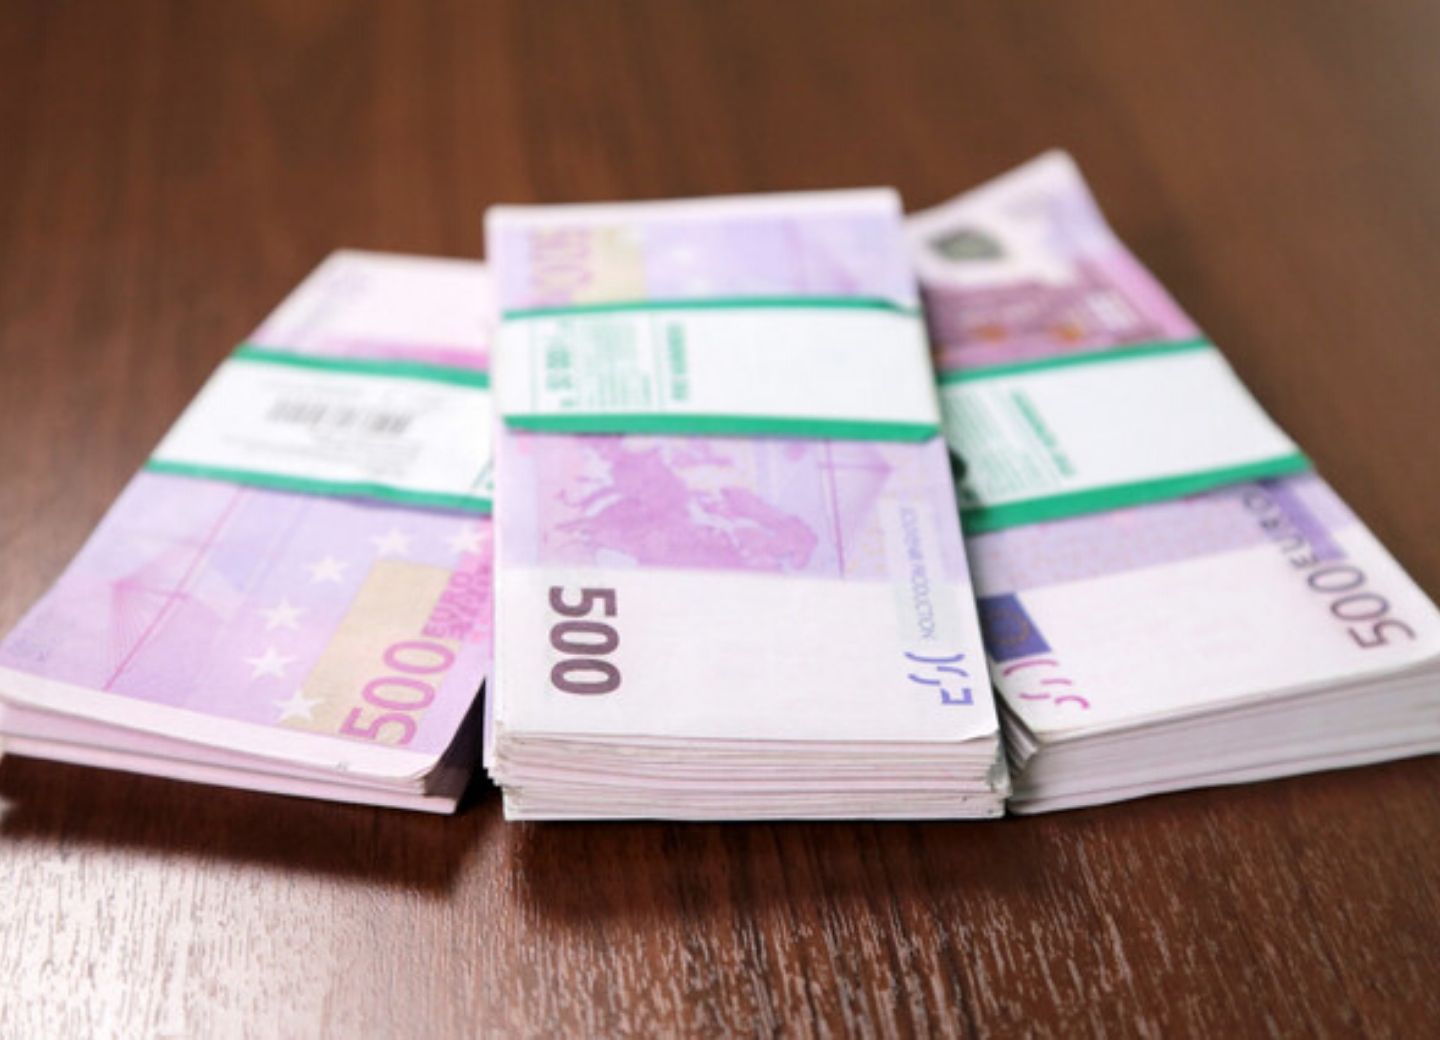 Азербайджан выделил Боснии и Герцеговине более 500 тысяч евро